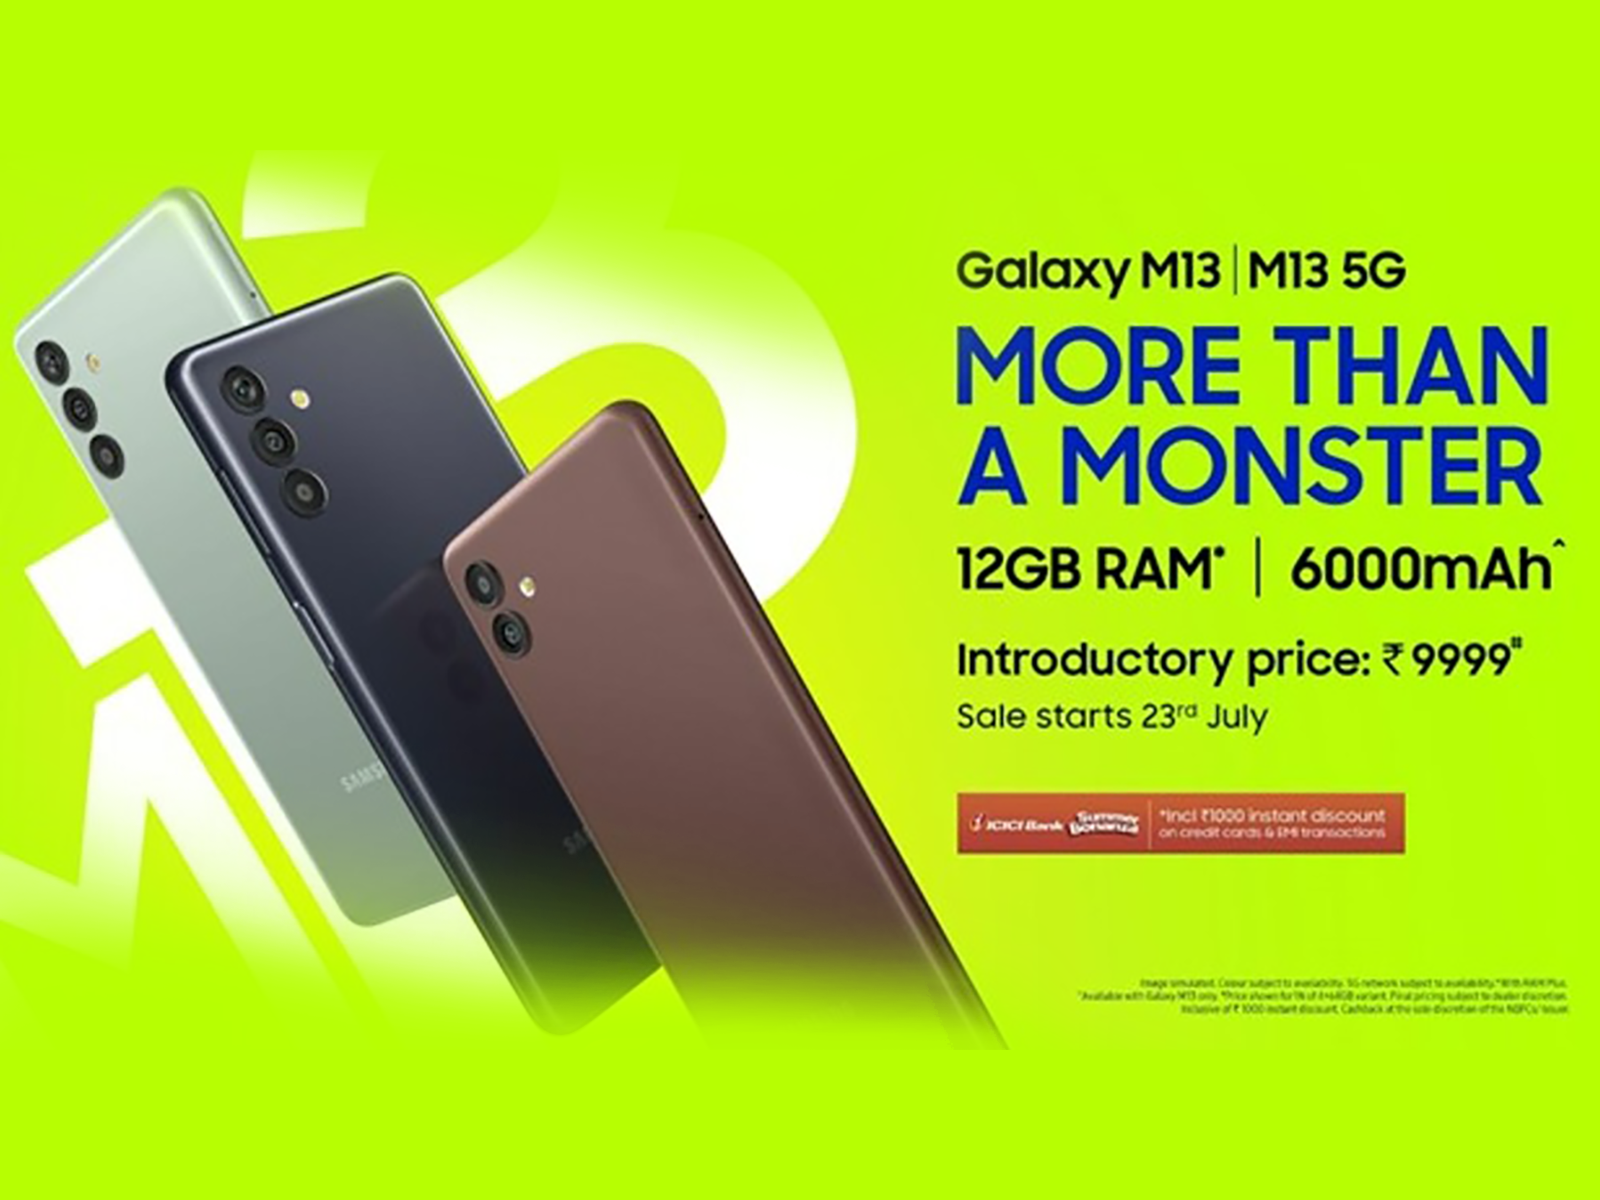 Samsung Galaxy M13 4G & M13 5G goes on sale!